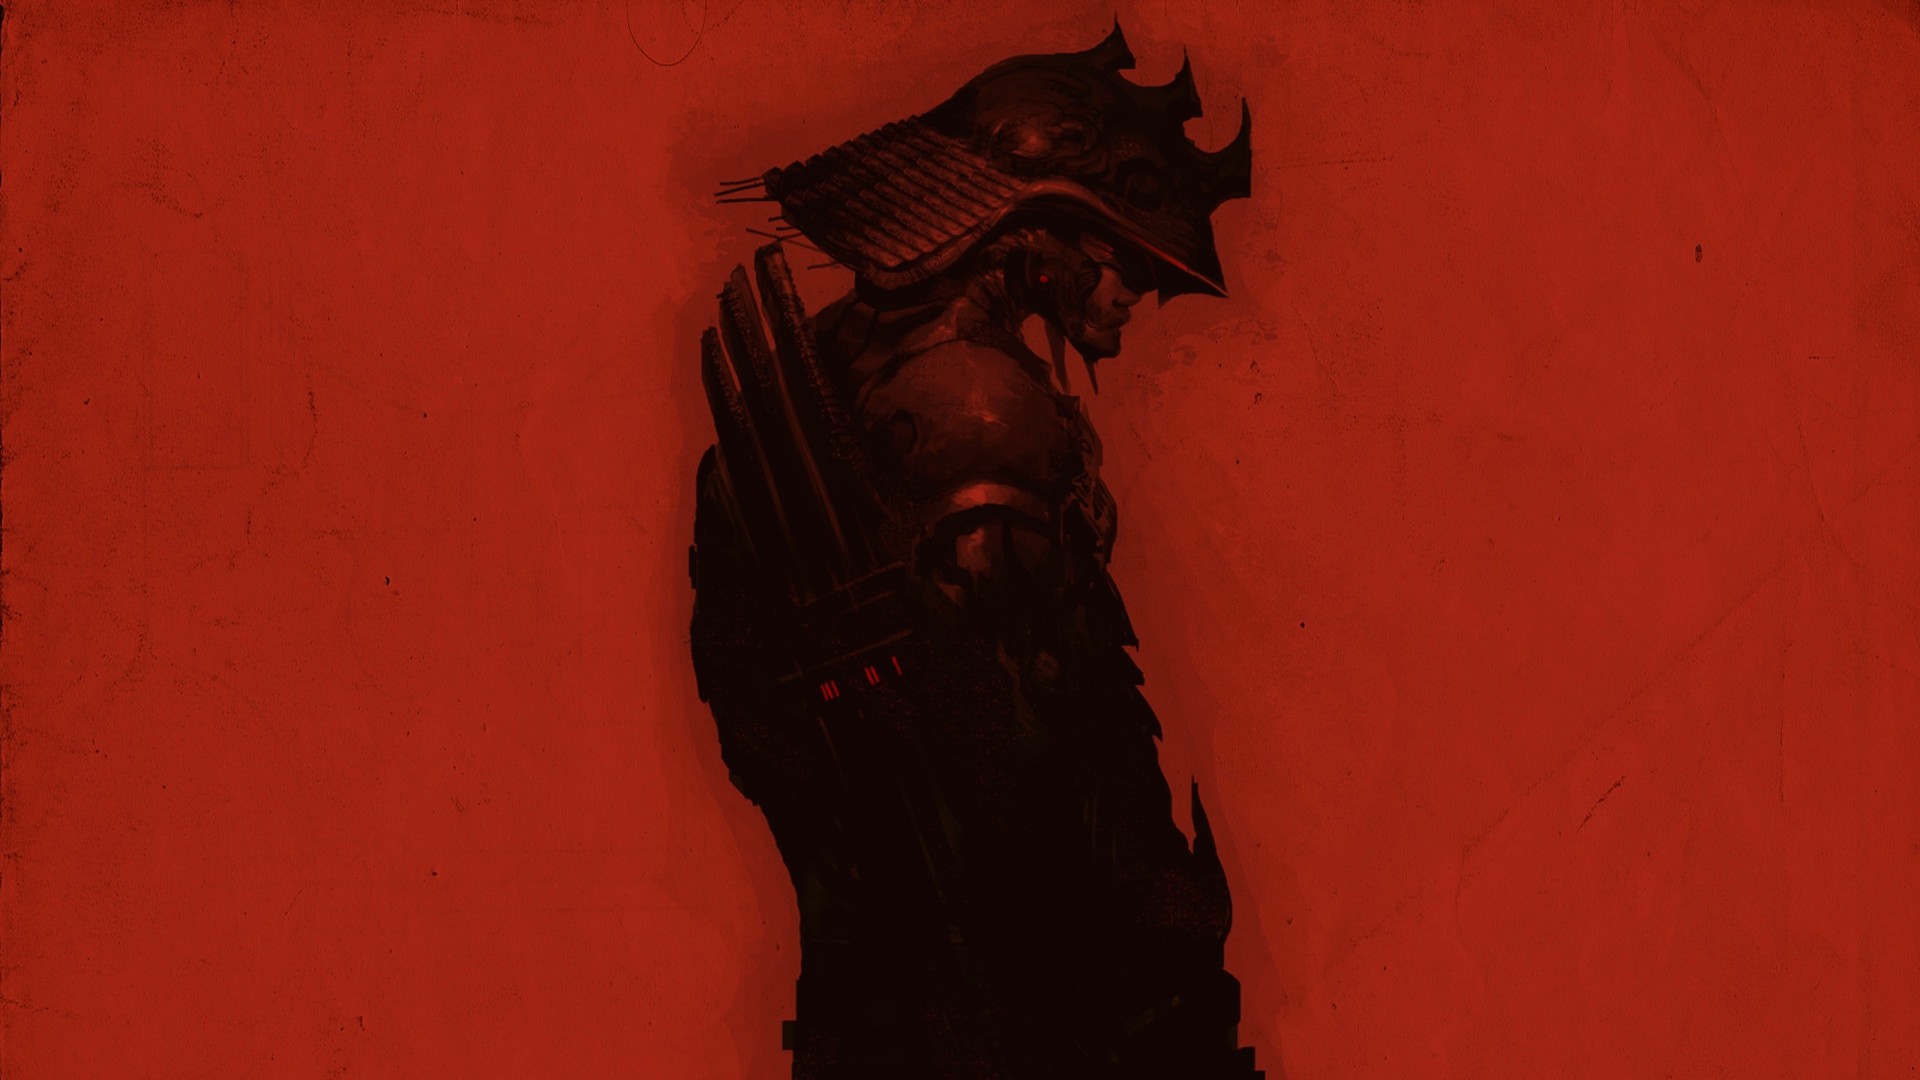 General 1920x1080 samurai artwork red warrior fantasy art red background